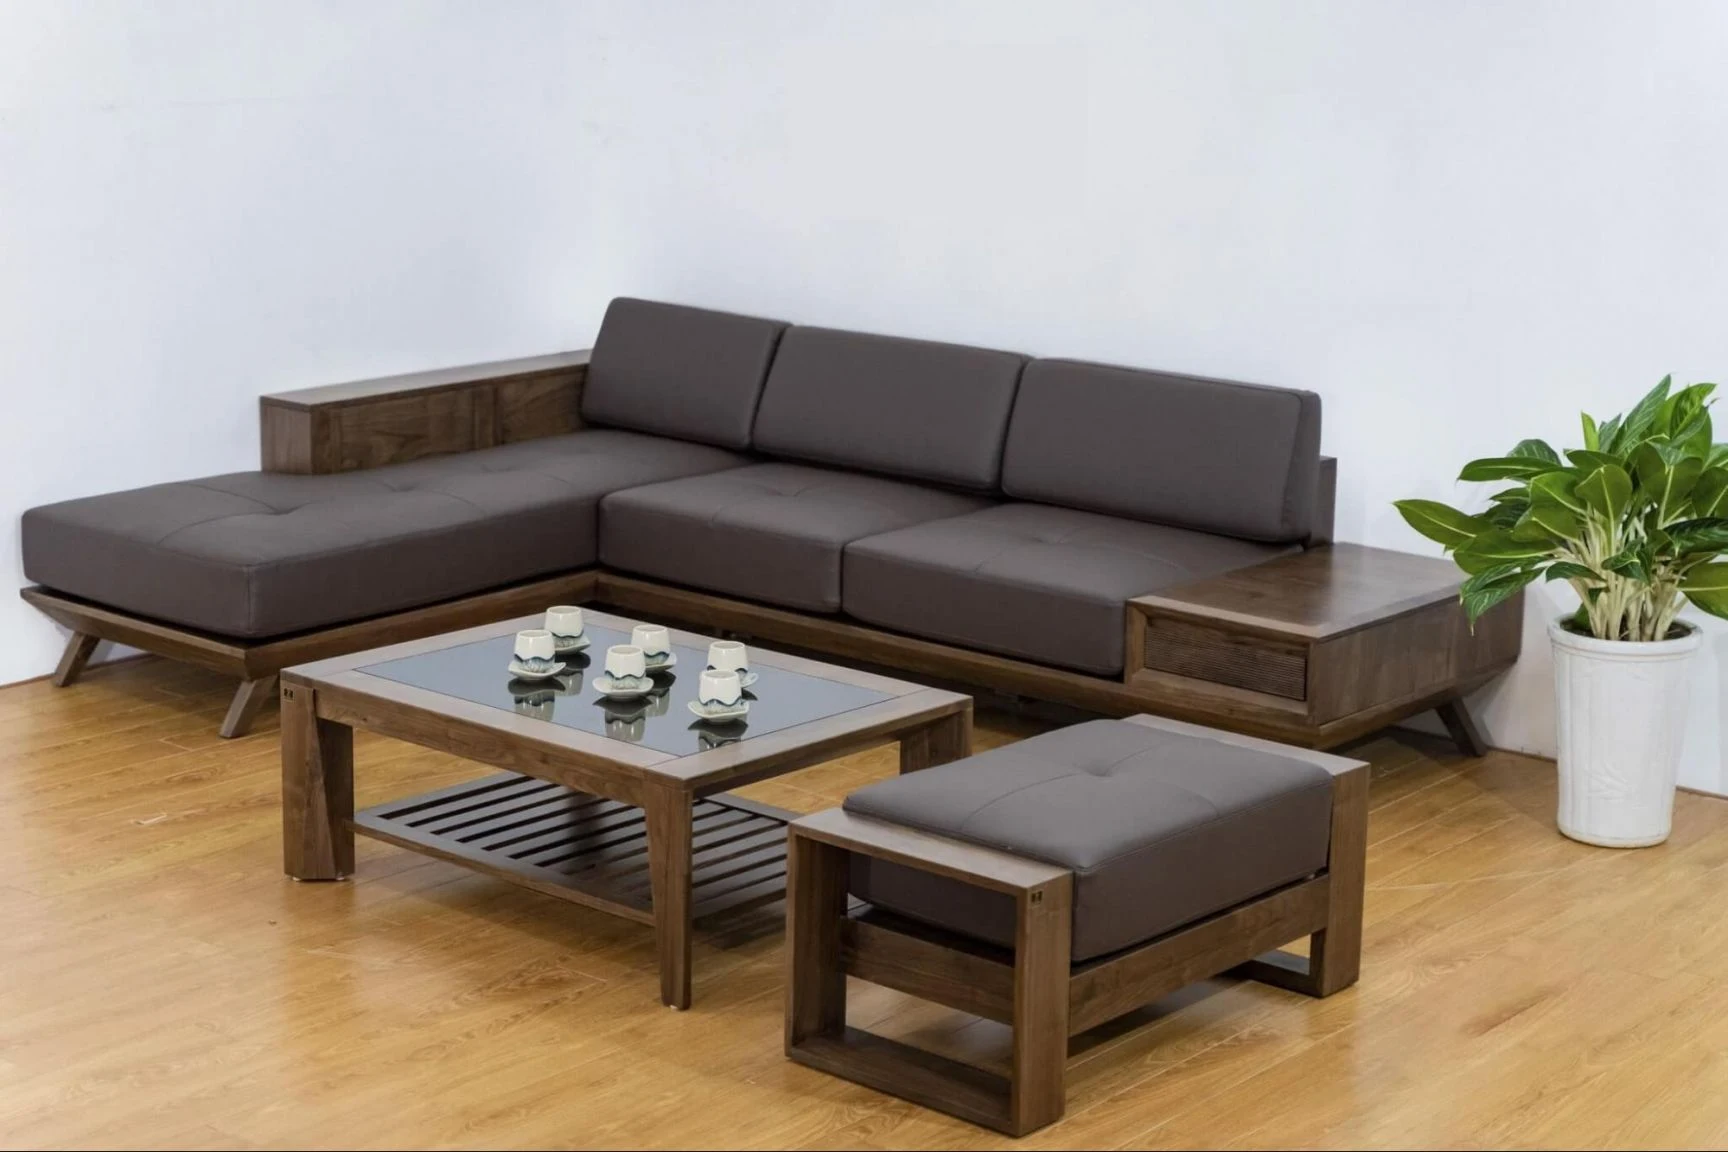 Bộ sofa gỗ mang tone màu trầm ấm, giá rẻ nhưng vẫn sang trọng